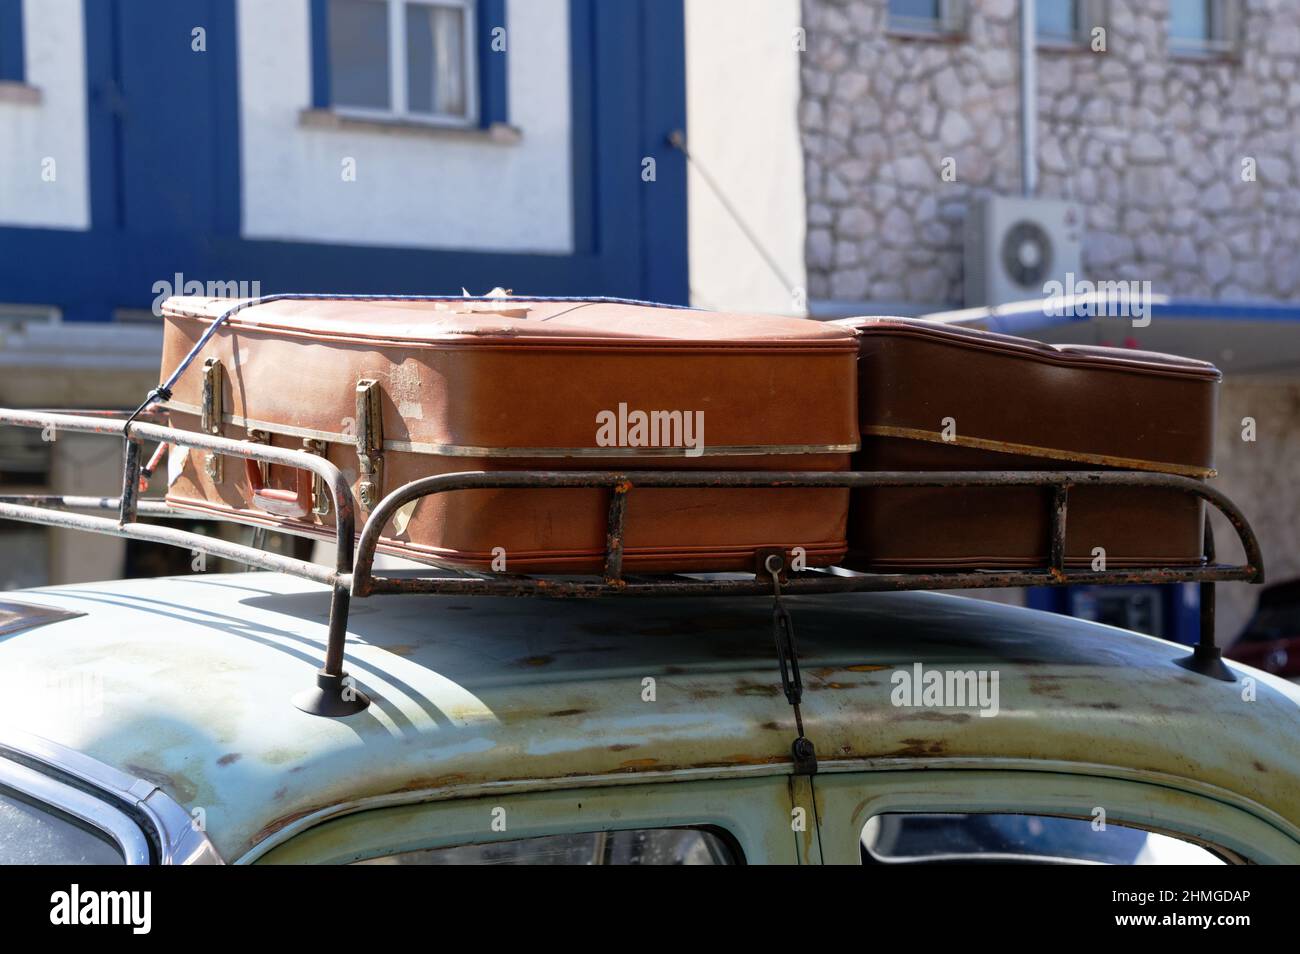 Alte Koffer werden an die Dachgepäckträger eines Oldtimer gebunden  Stockfotografie - Alamy